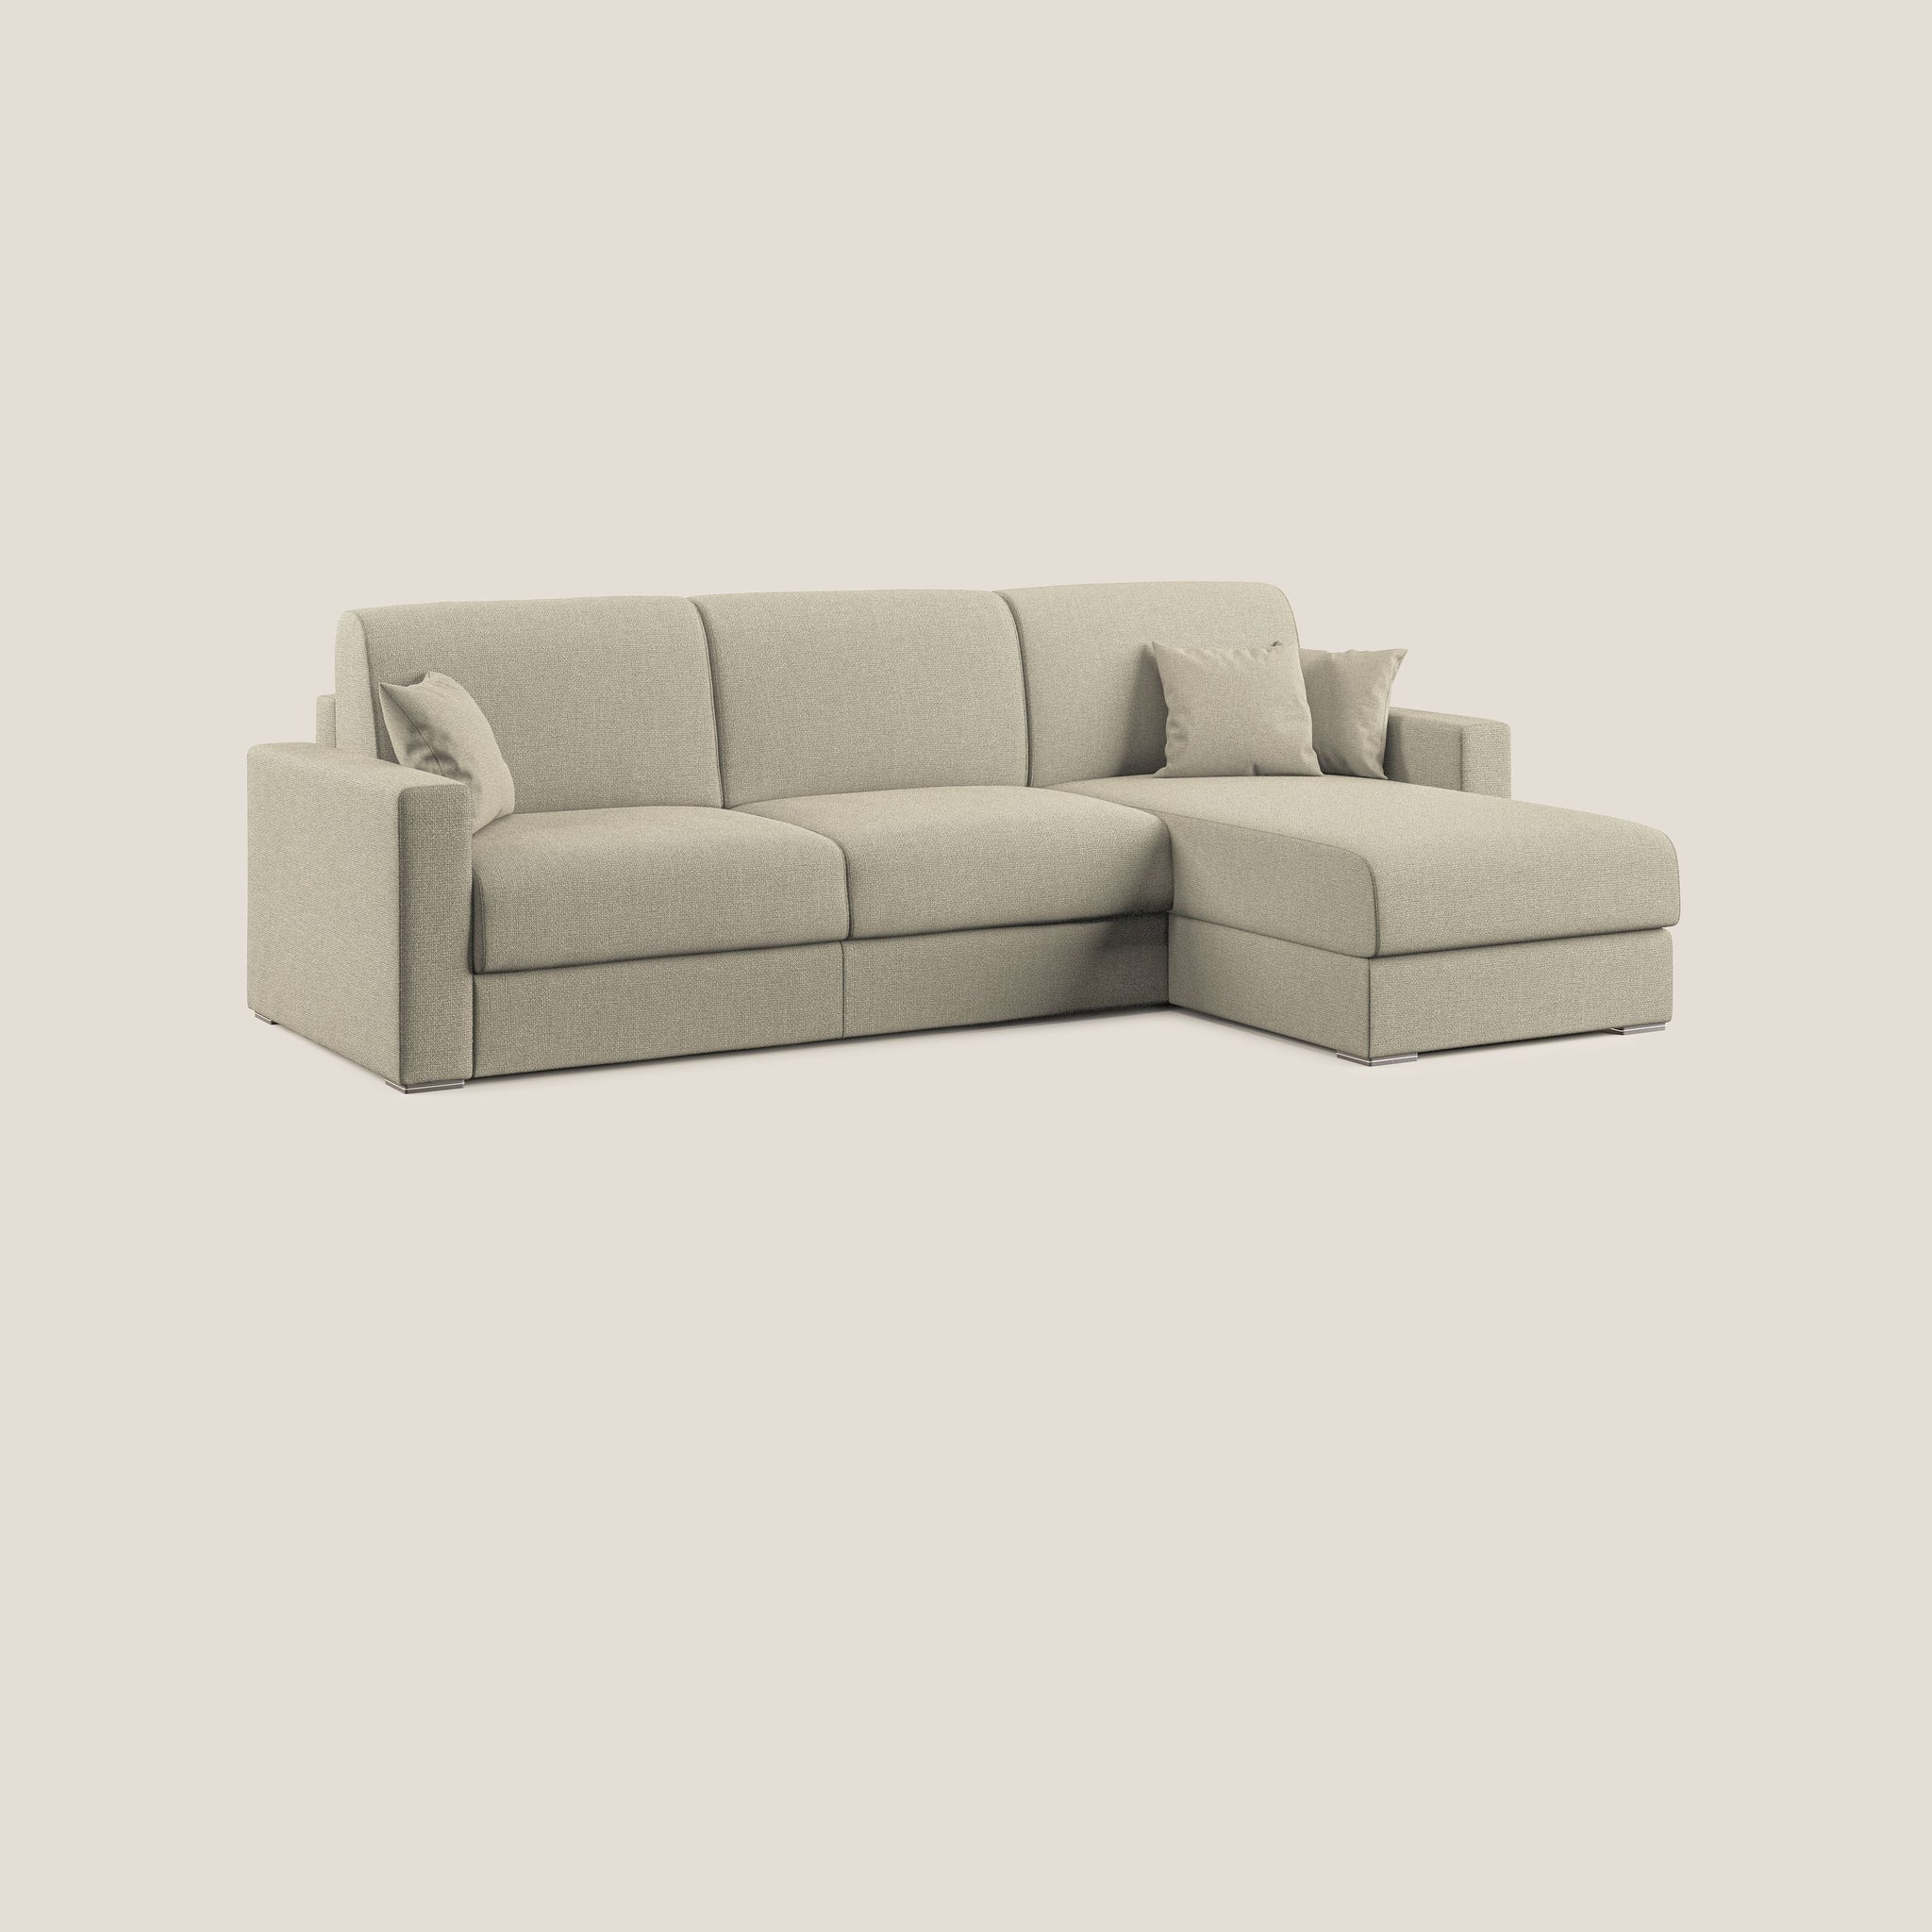 BEST Divano letto angolare con penisola in tessuto smacchiabile QuickClean - divano angolare, divano letto, via_enabled - Divani.Store